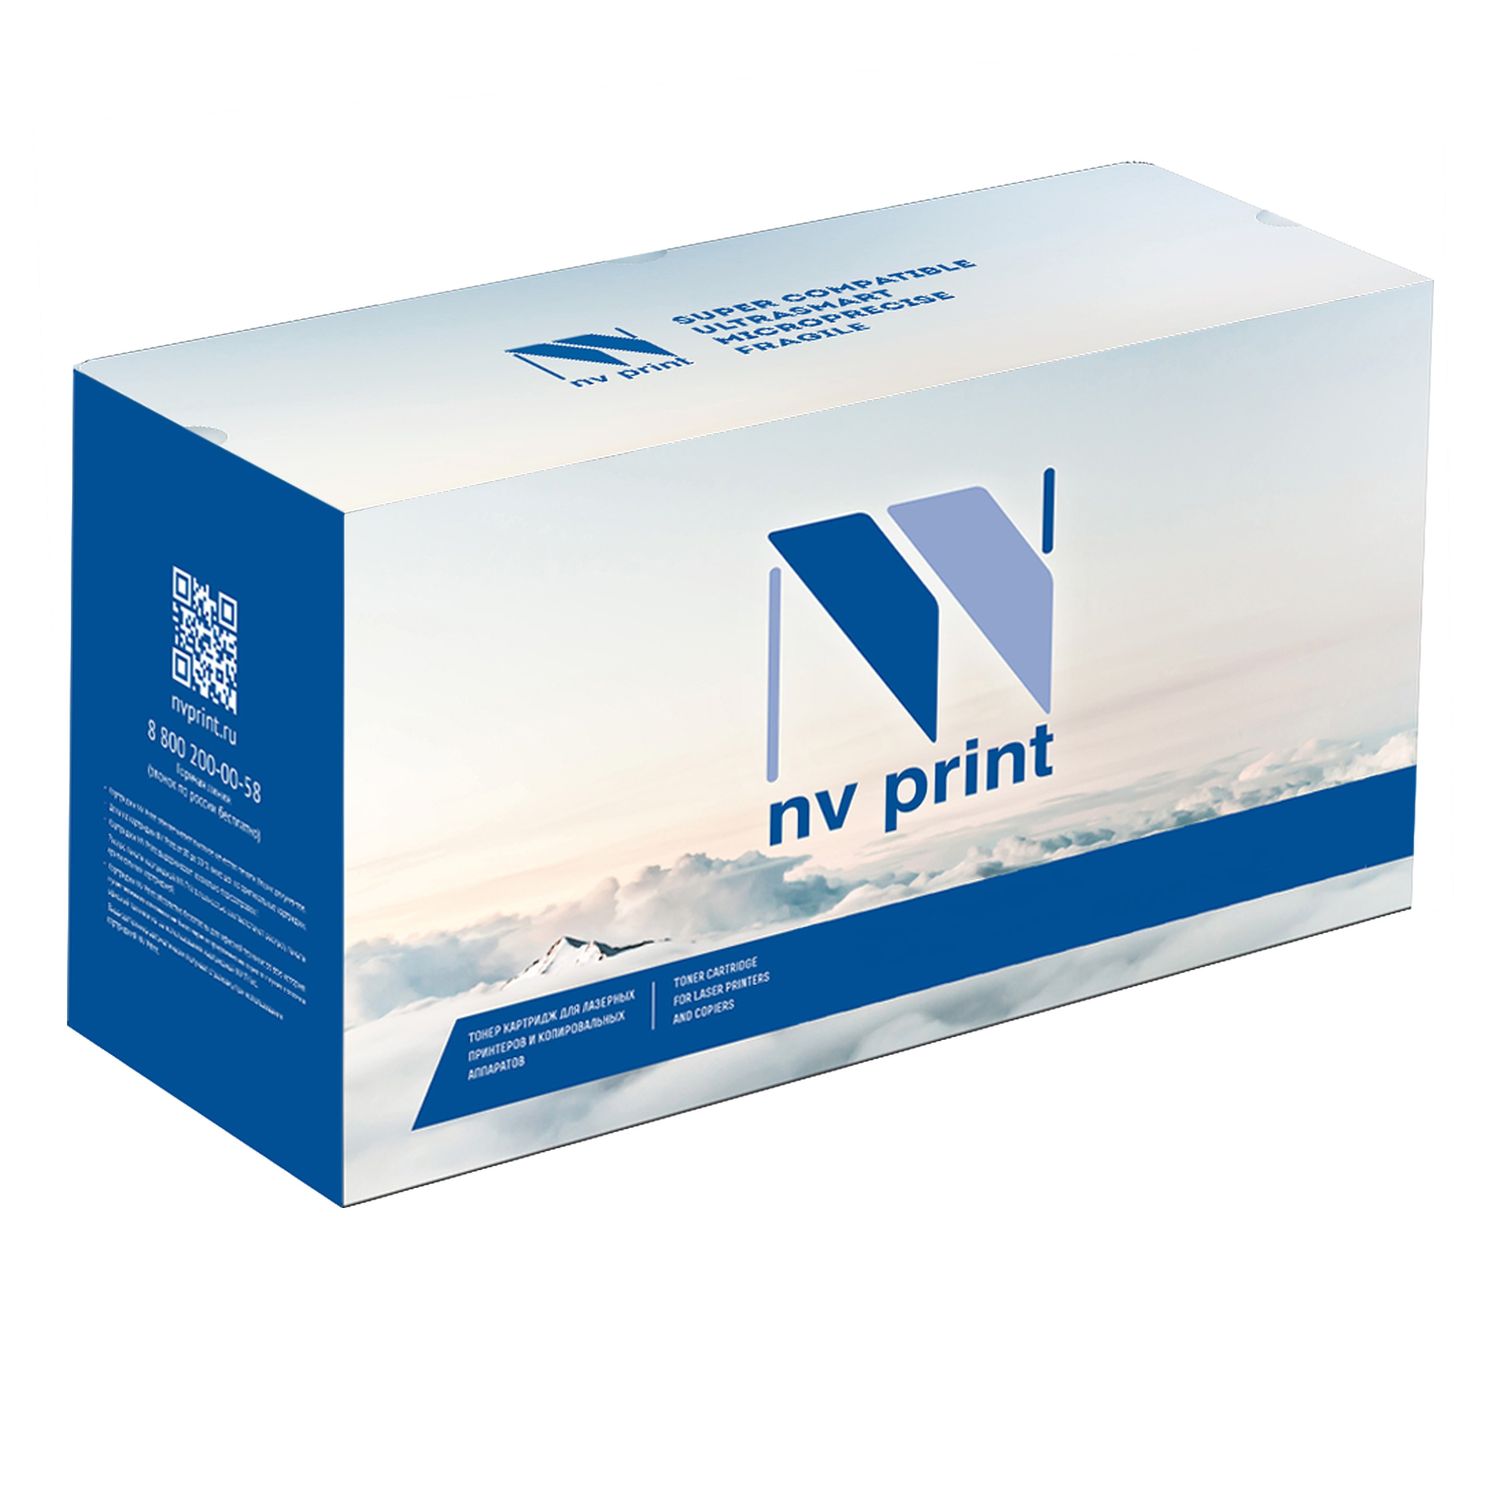 Картридж NV Print ML-1610 UNIV для Samsung ML 1610/2010/2015/4321/Xer 3117/3124 (3000k) картридж nv print ml 1210 univ для samsung ml 1210 1430 4500 xerox 3110 3210 2500k